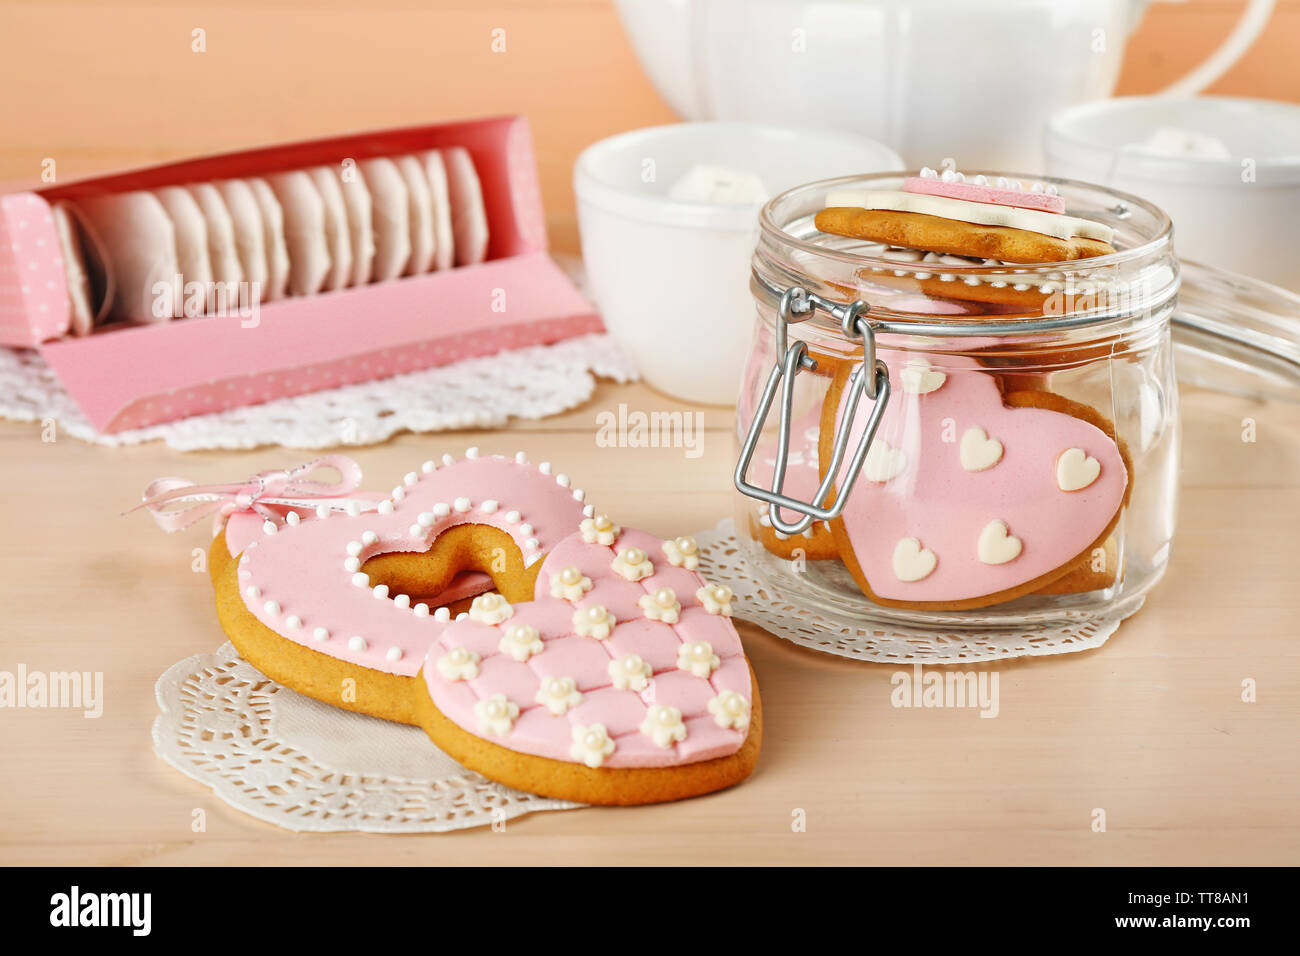 A forma di cuore i cookie per il giorno di San Valentino e delle bustine di tè su sfondo di legno Foto Stock